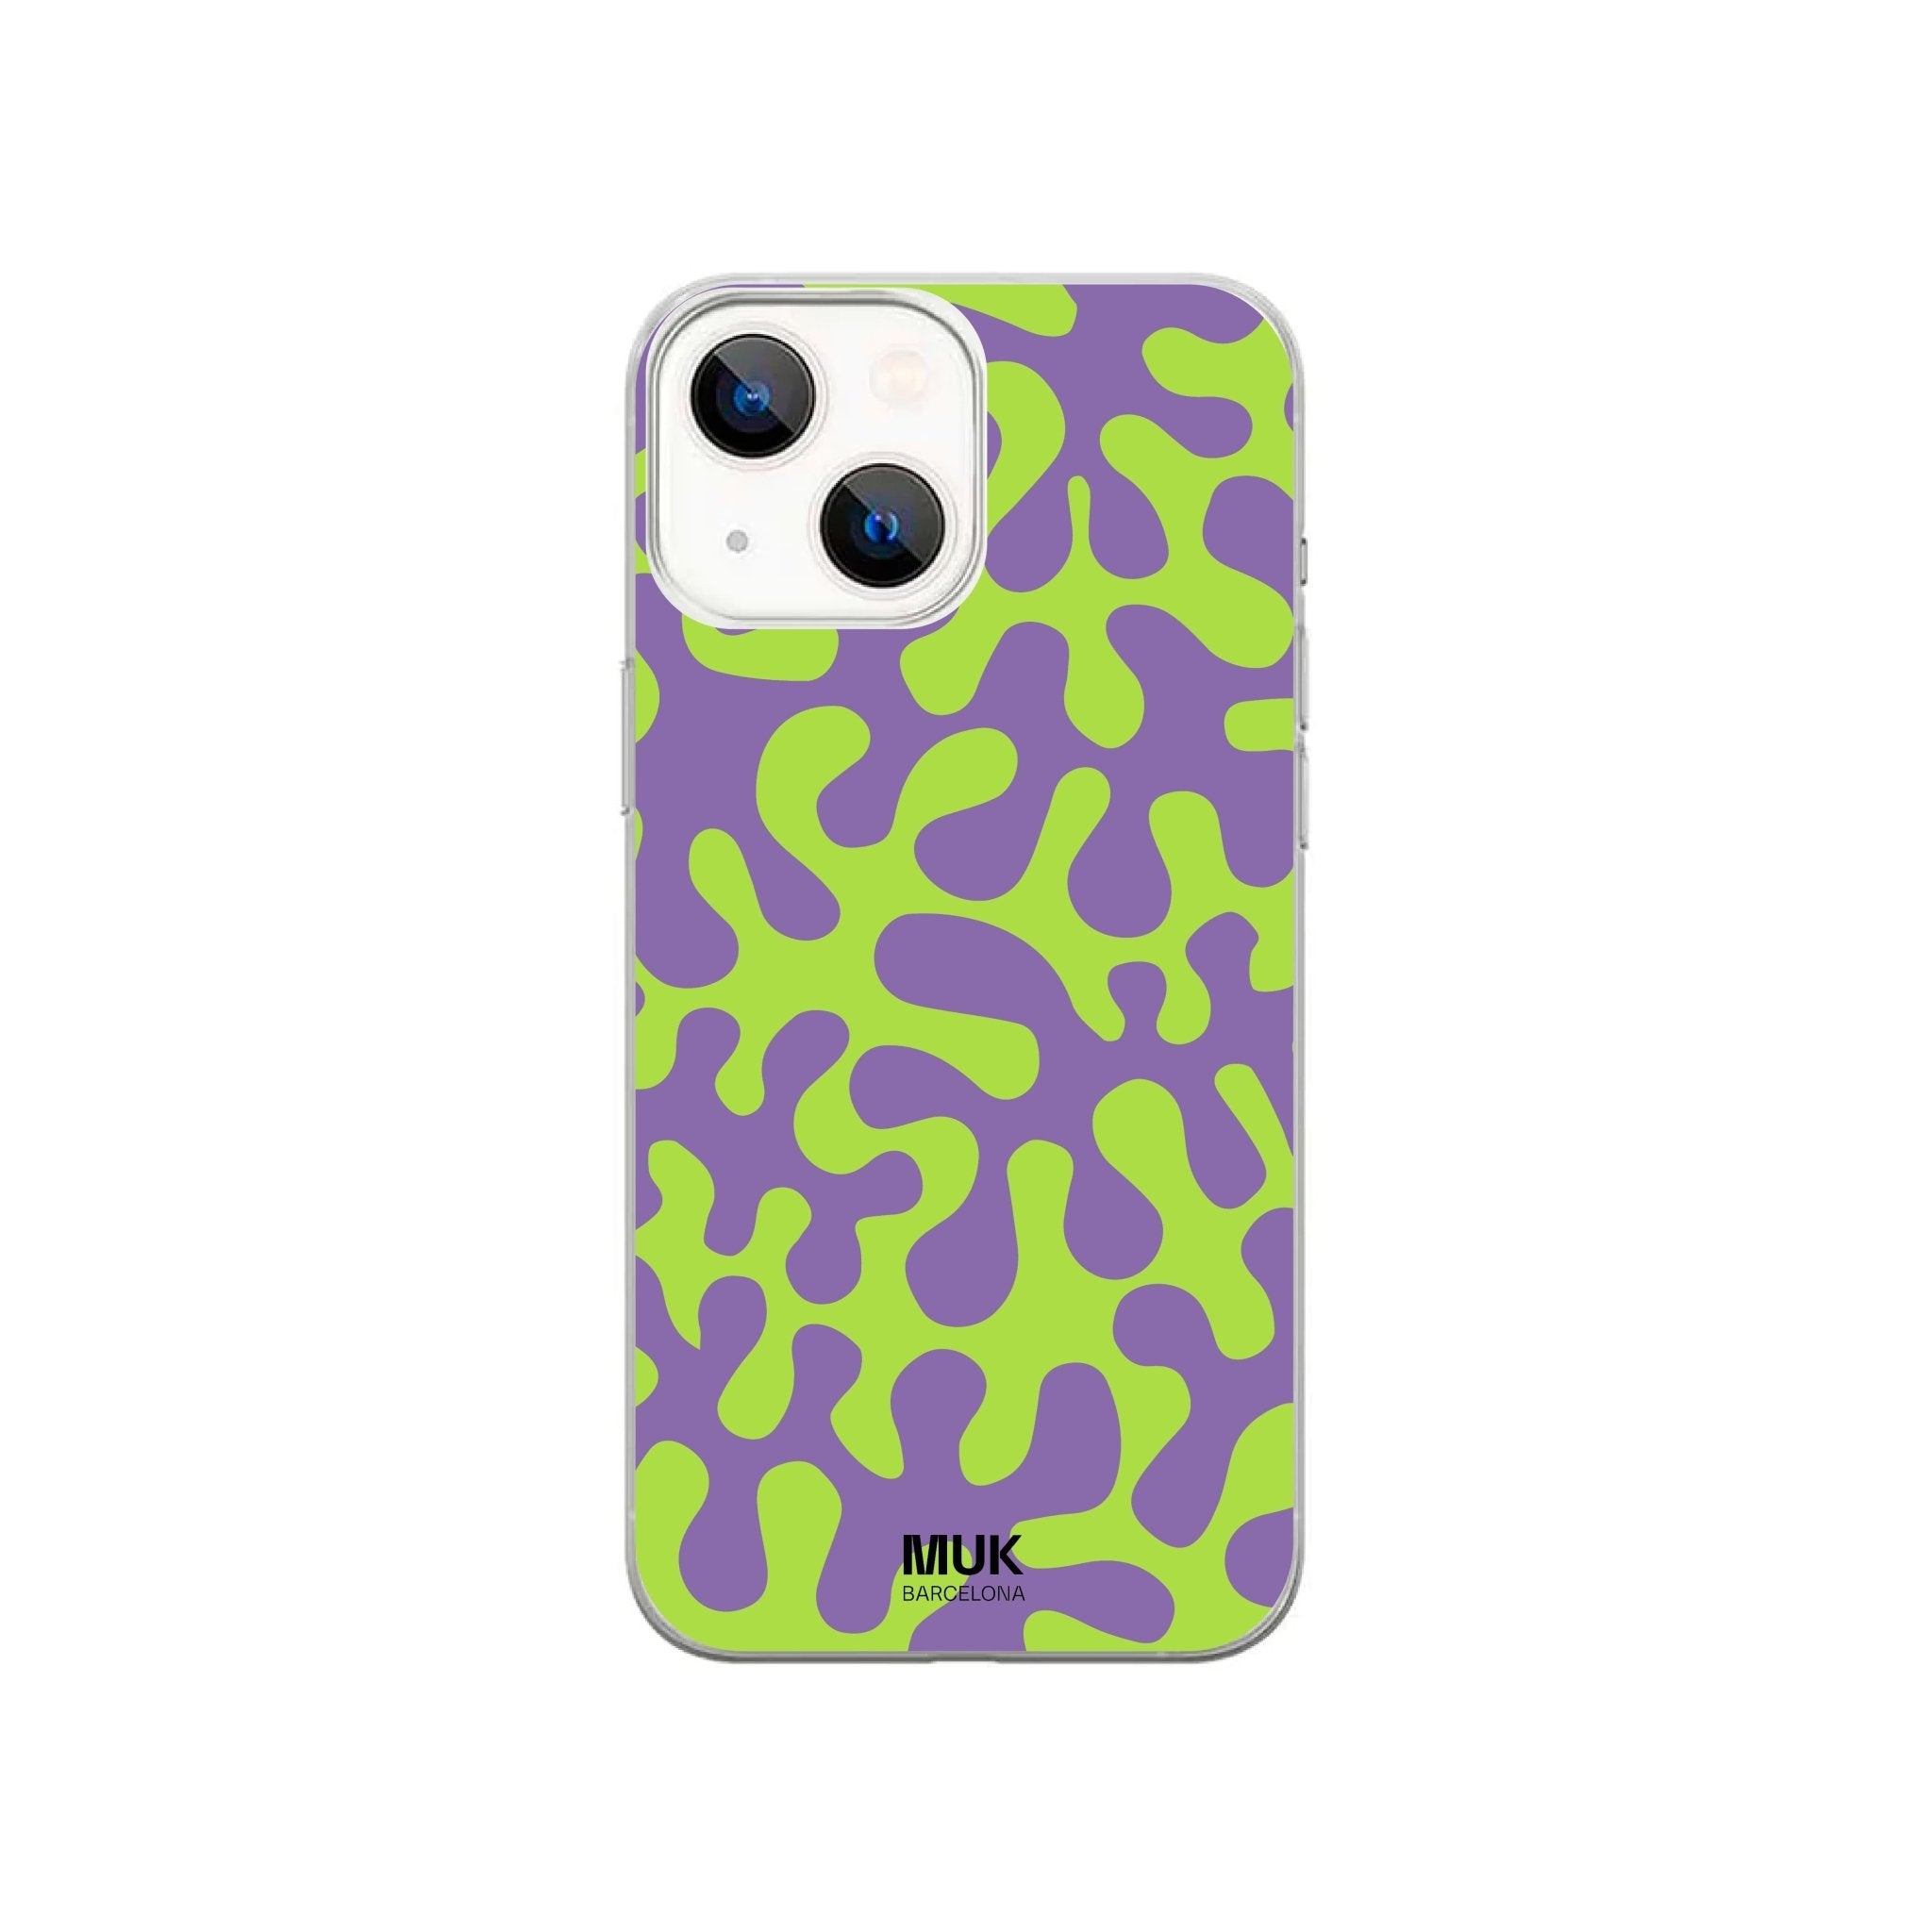 Funda de móvil transparente con estampado coral en color verde y lima.
